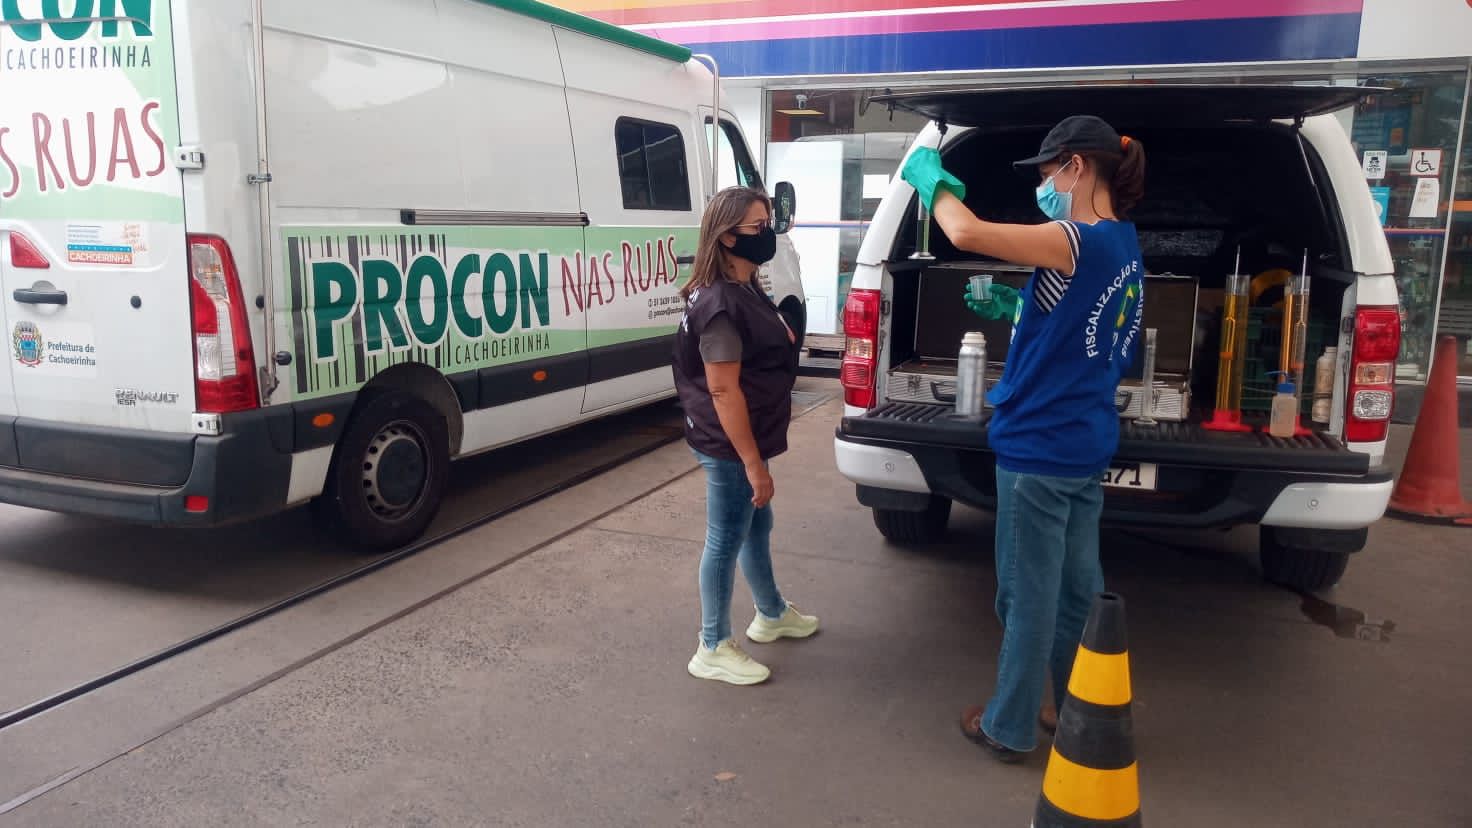 Procon de Cachoeirinha realiza fiscalização em quatro postos de combustíveis